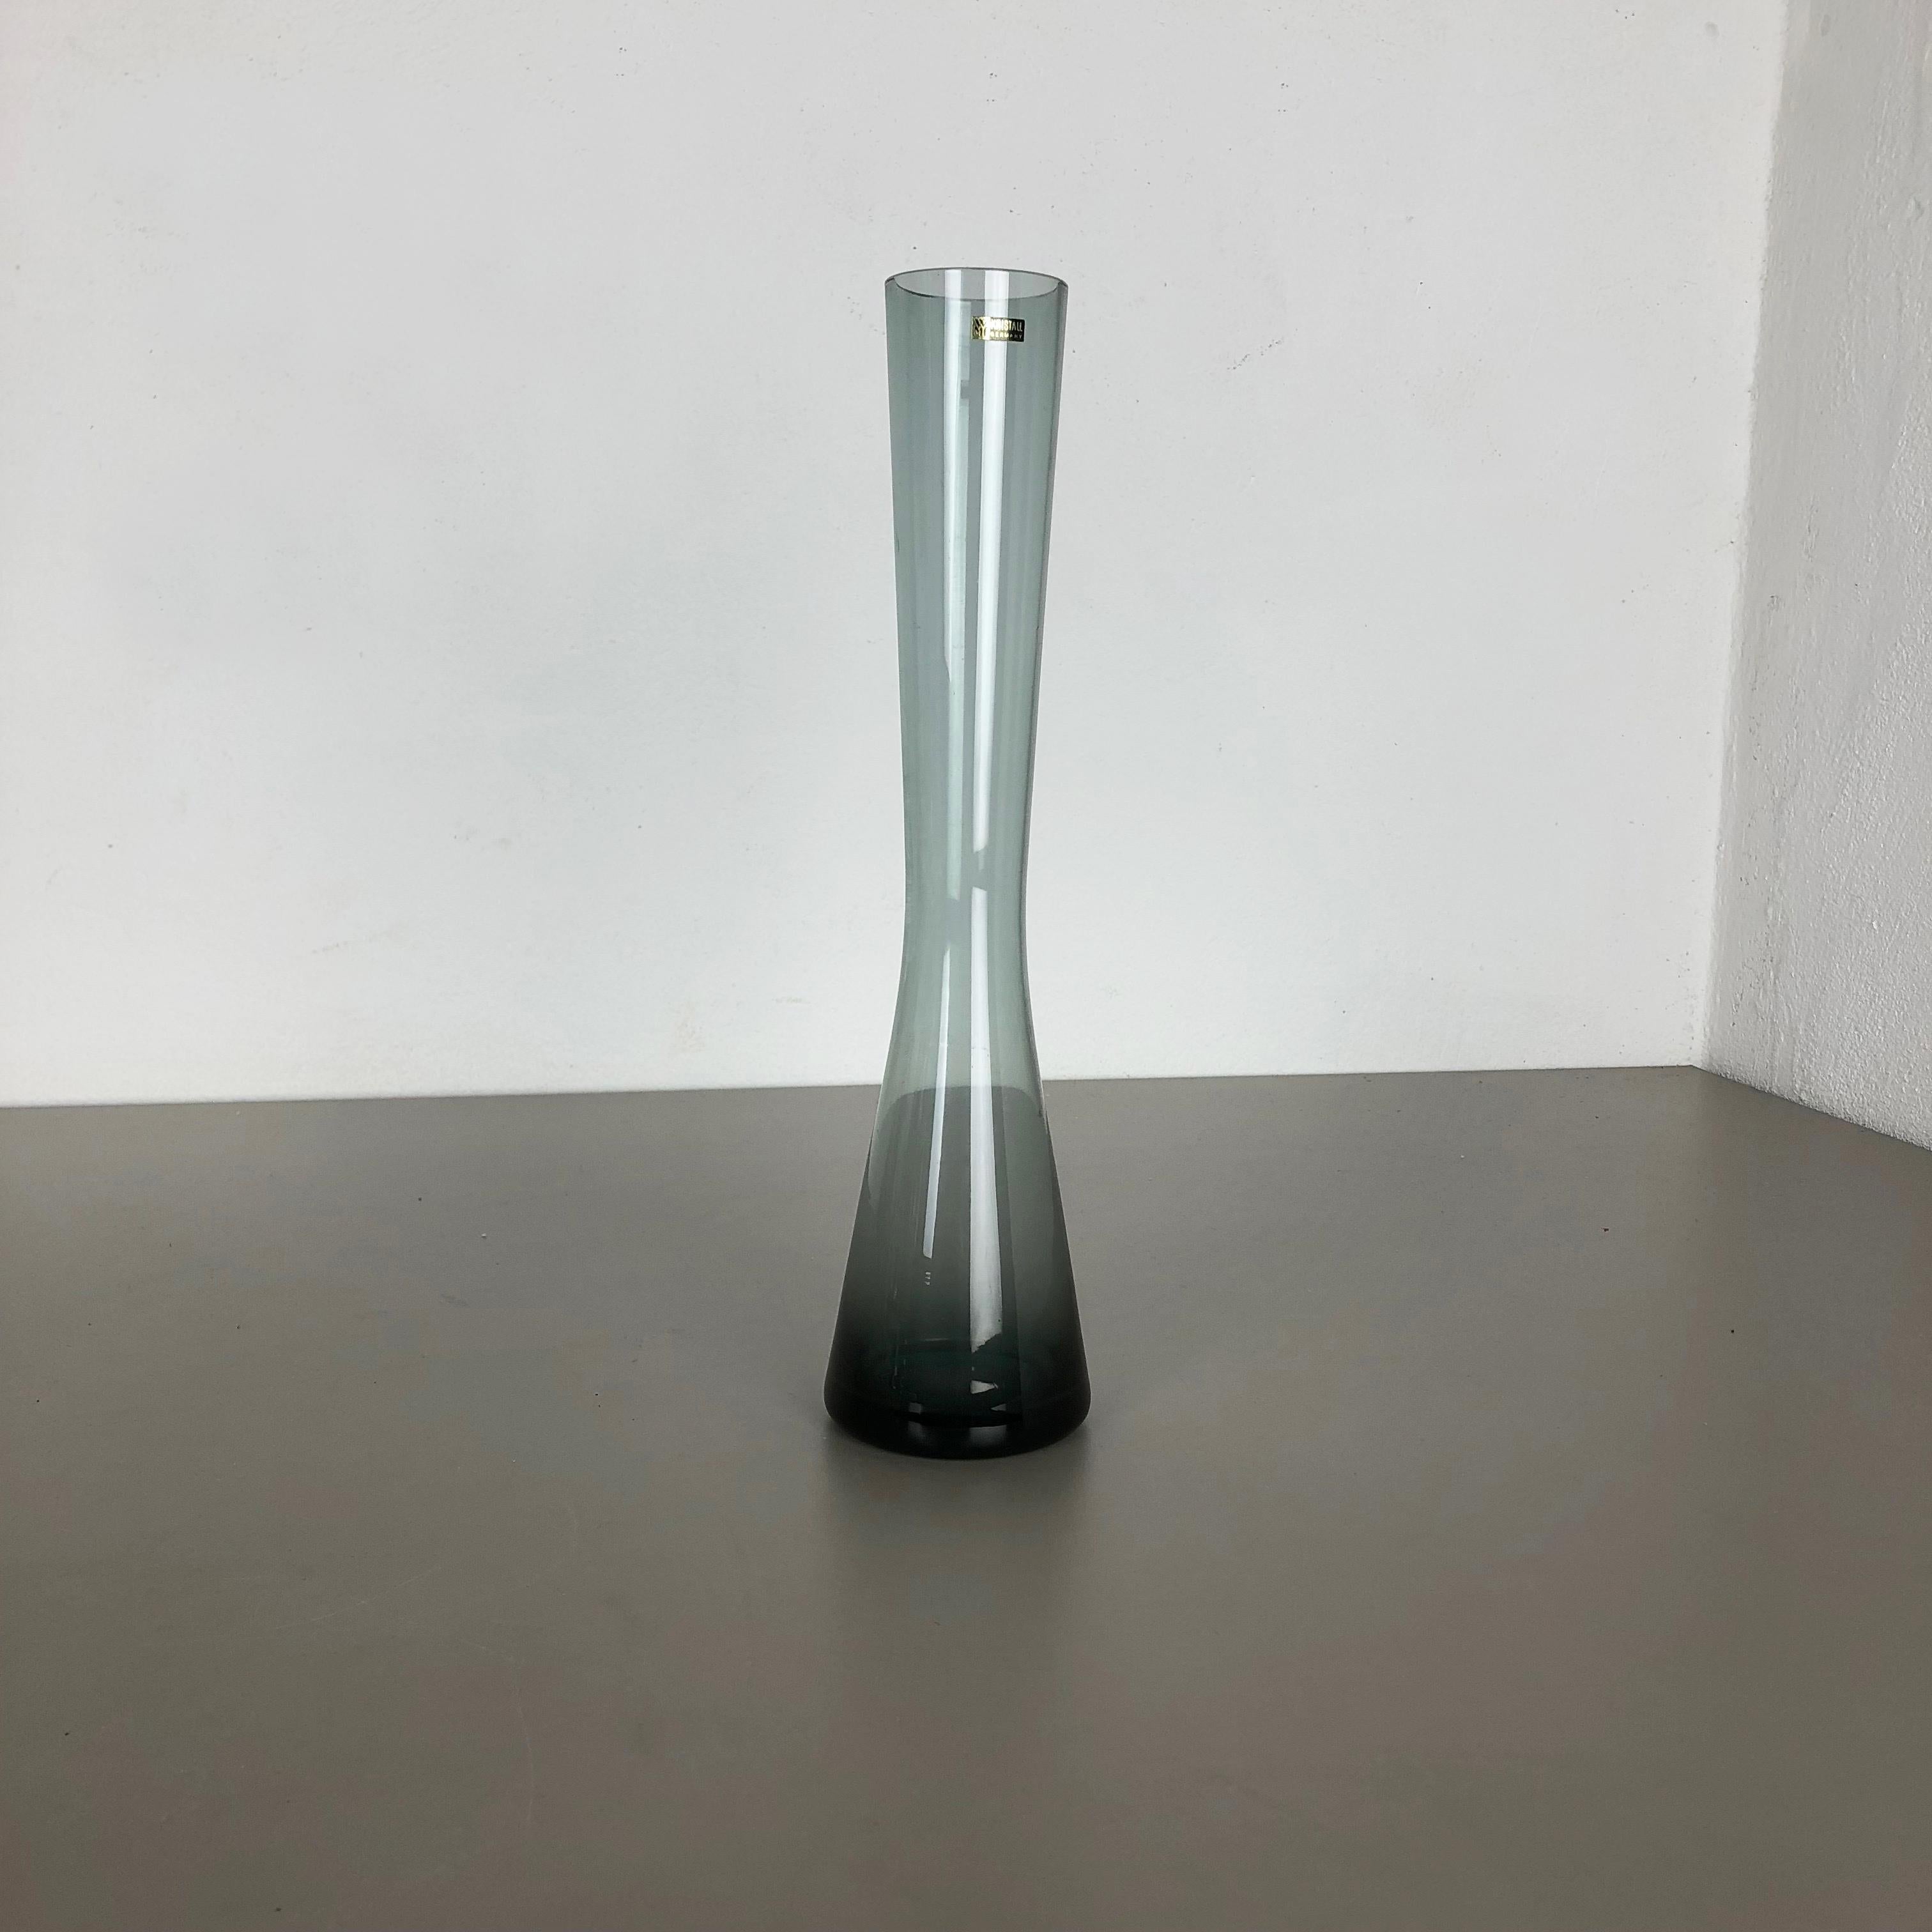 Article :

Vase en verre


Producteur :

WMF Württembergische Metallwaren Fabrik à Geislingen 


Concepteur :

Wilhelm Wagenfeld 


Conception :

Série WMF turmalin


Décennie :

1960s



Vase original des années 1960 de la